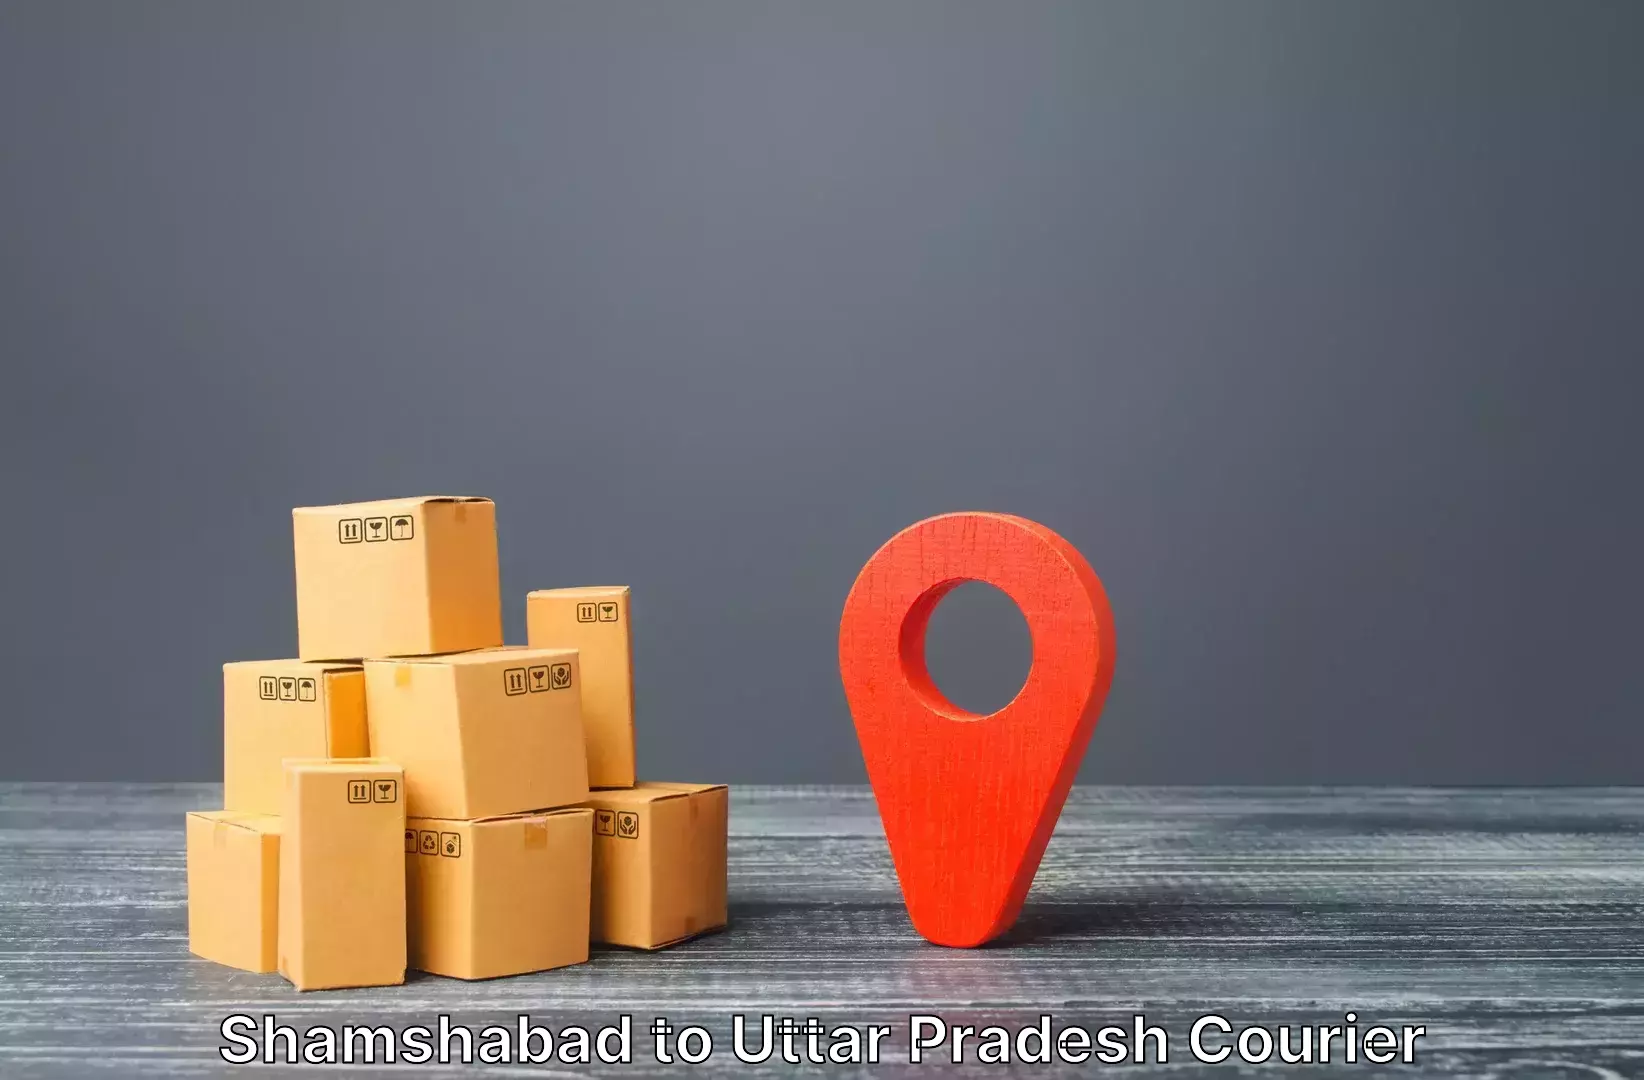 Electronic items luggage shipping Shamshabad to Domariyaganj